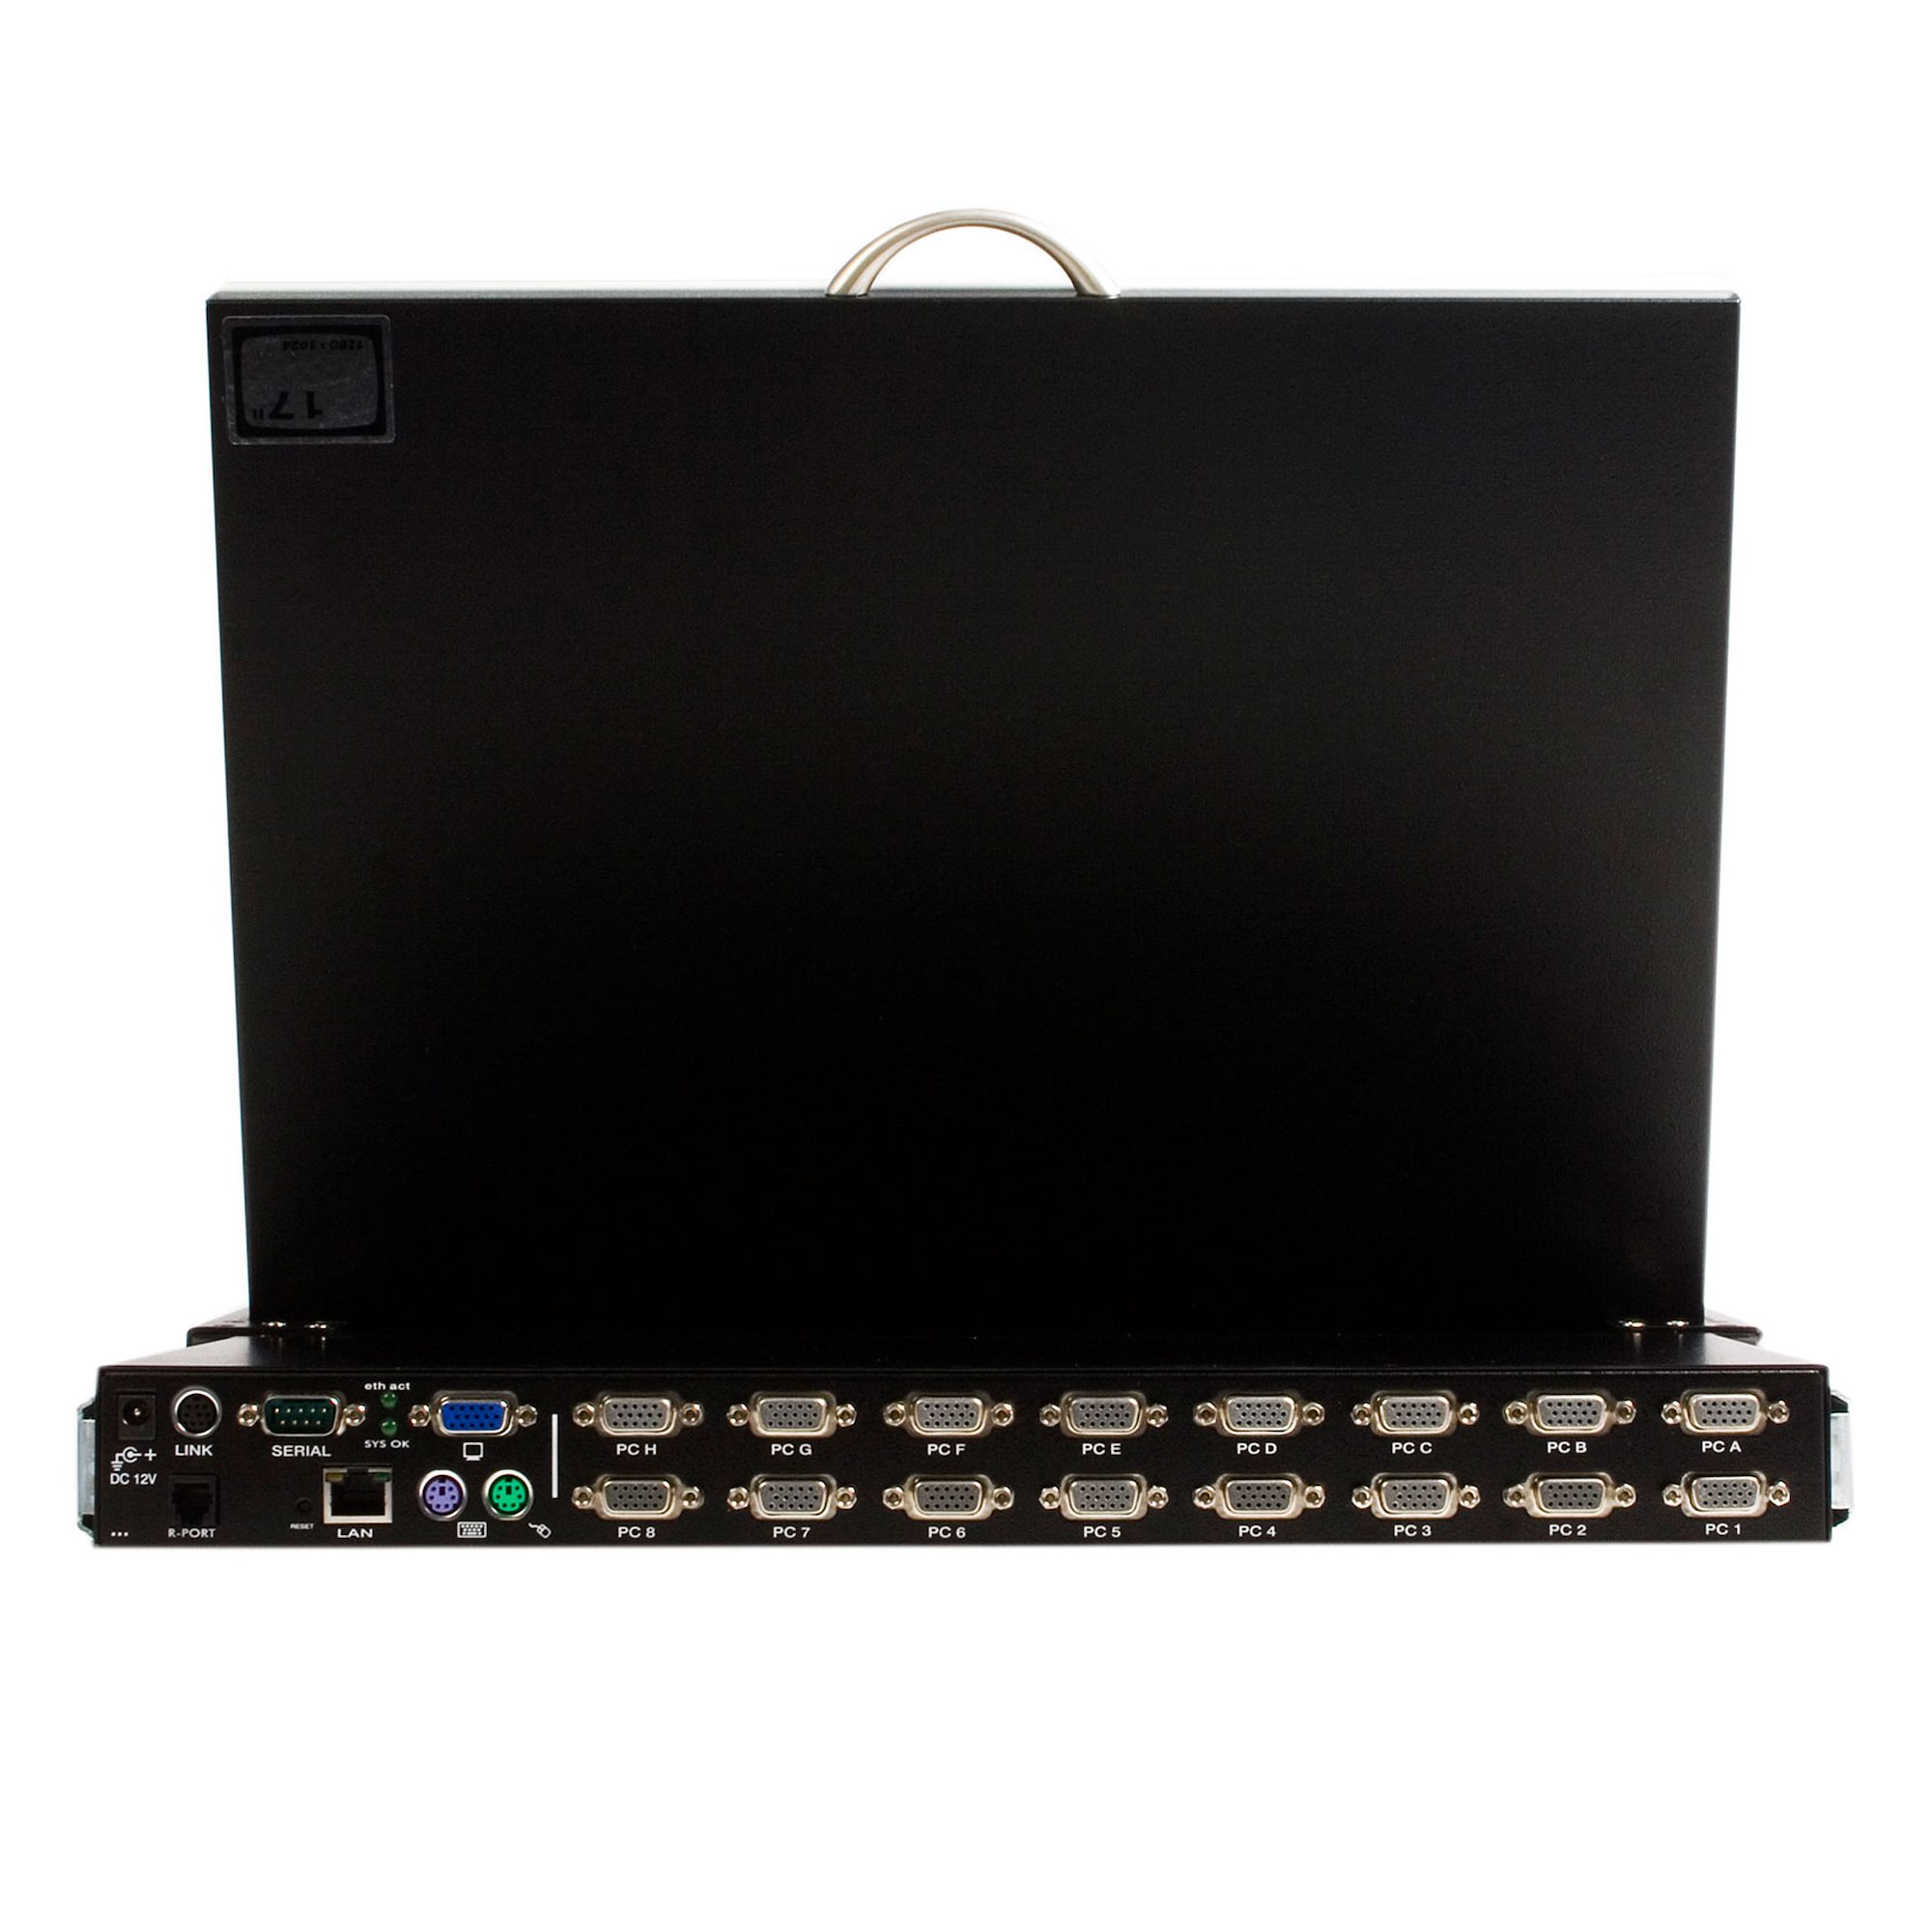 16-Port KVM Switch, 17 in. LCD, DisplayPort, IP Remote Access, 1U